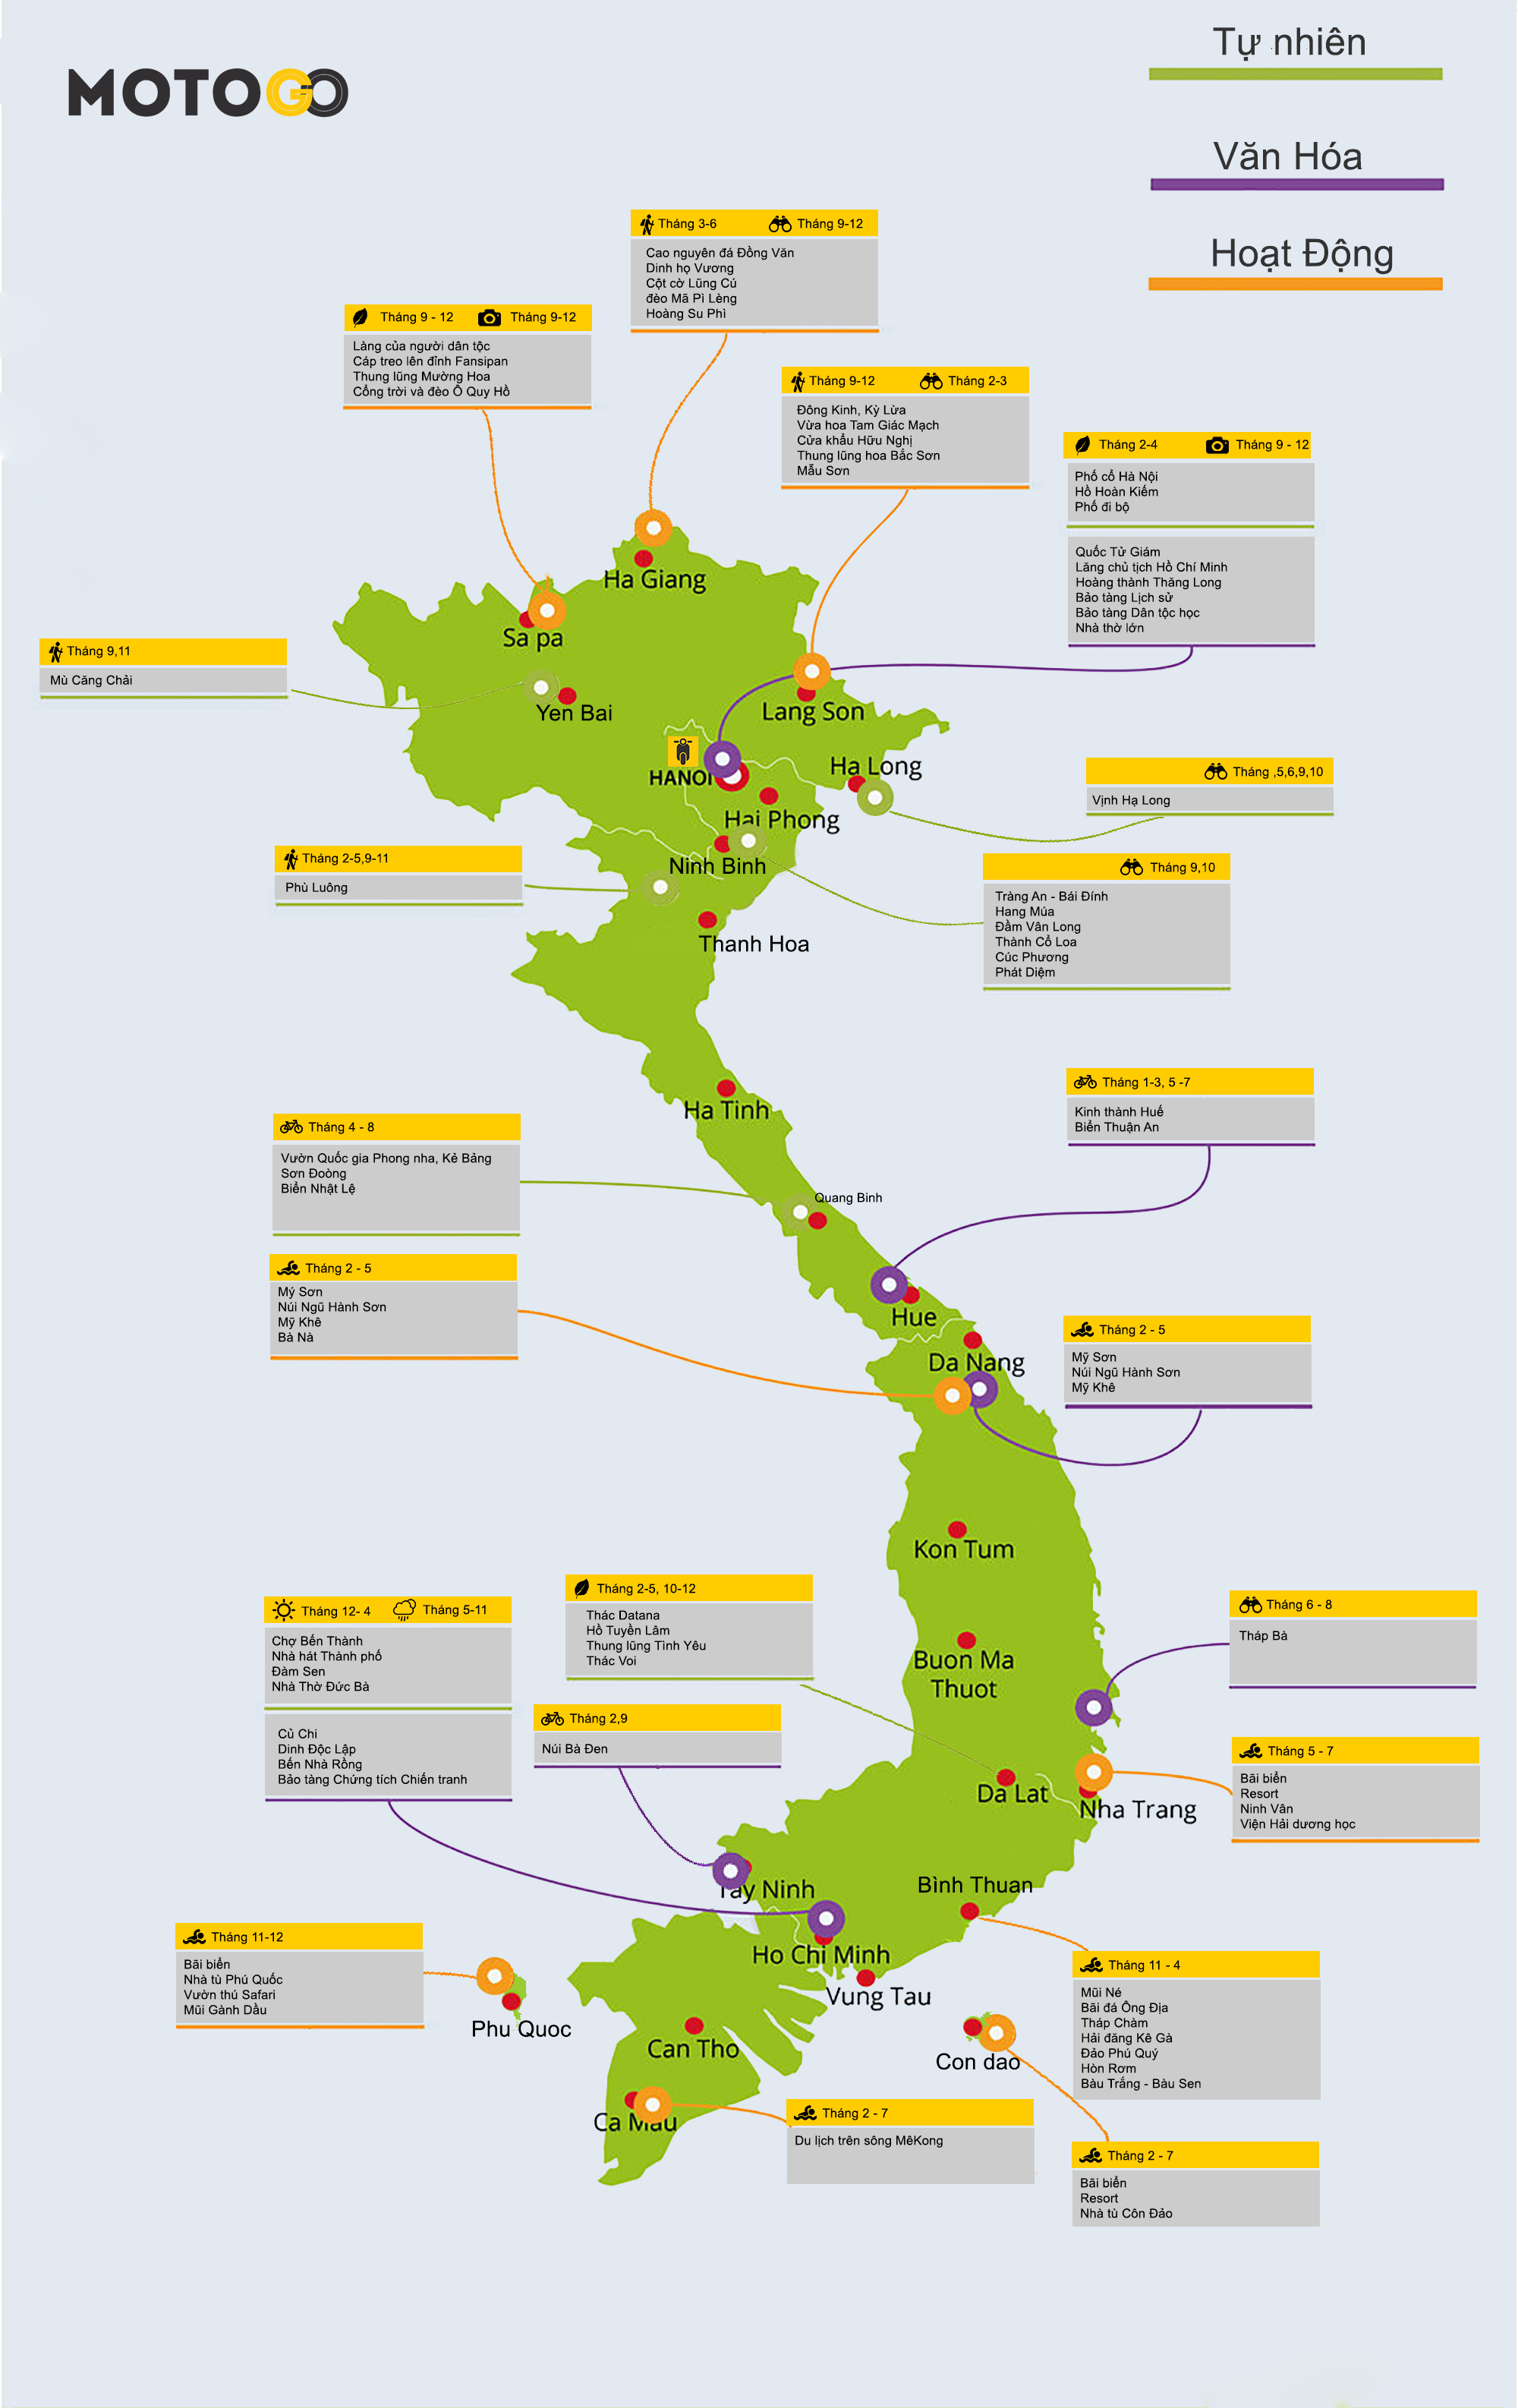 Với bản đồ du lịch Việt Nam theo mùa 2024 của MOTOGO, bạn sẽ dễ dàng lên lịch cho những chuyến đi đầy thú vị. Từ bờ biển phương Nam đến vùng núi phía Bắc, mỗi mùa đều có những địa điểm hấp dẫn đang chờ bạn khám phá. Hãy cùng MOTOGO trải nghiệm hành trình đầy đam mê!